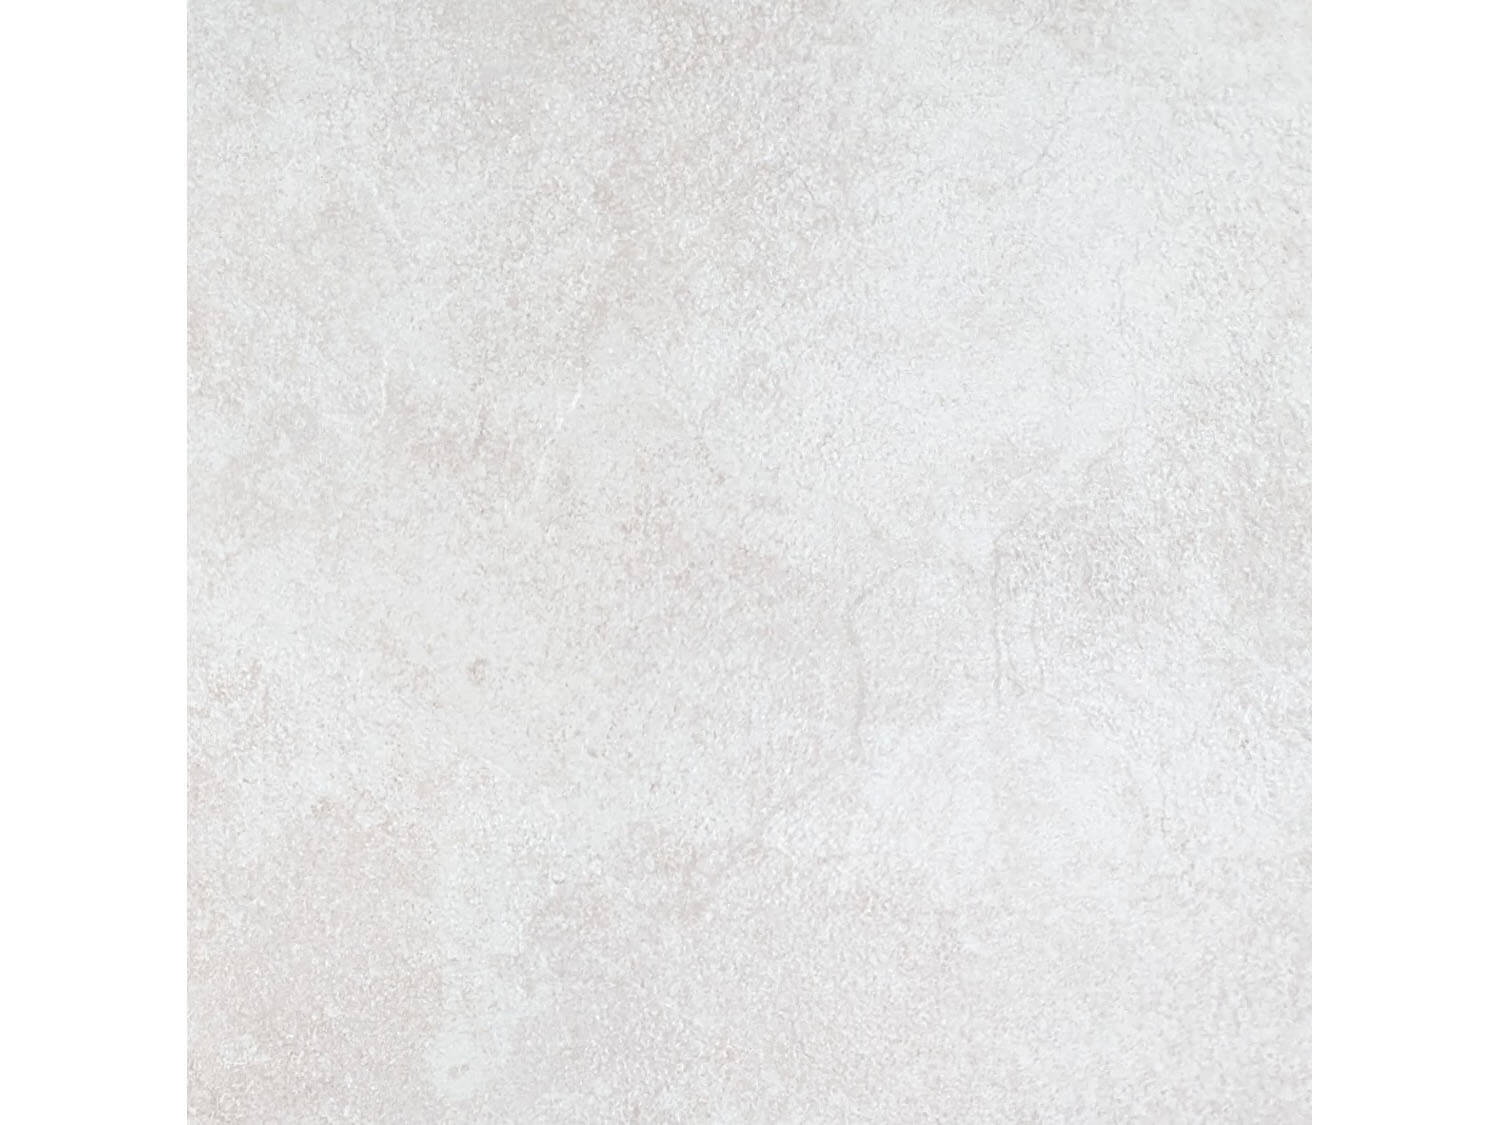 Pluto Silver Ceramic Floor Tile - 393 x 393mm